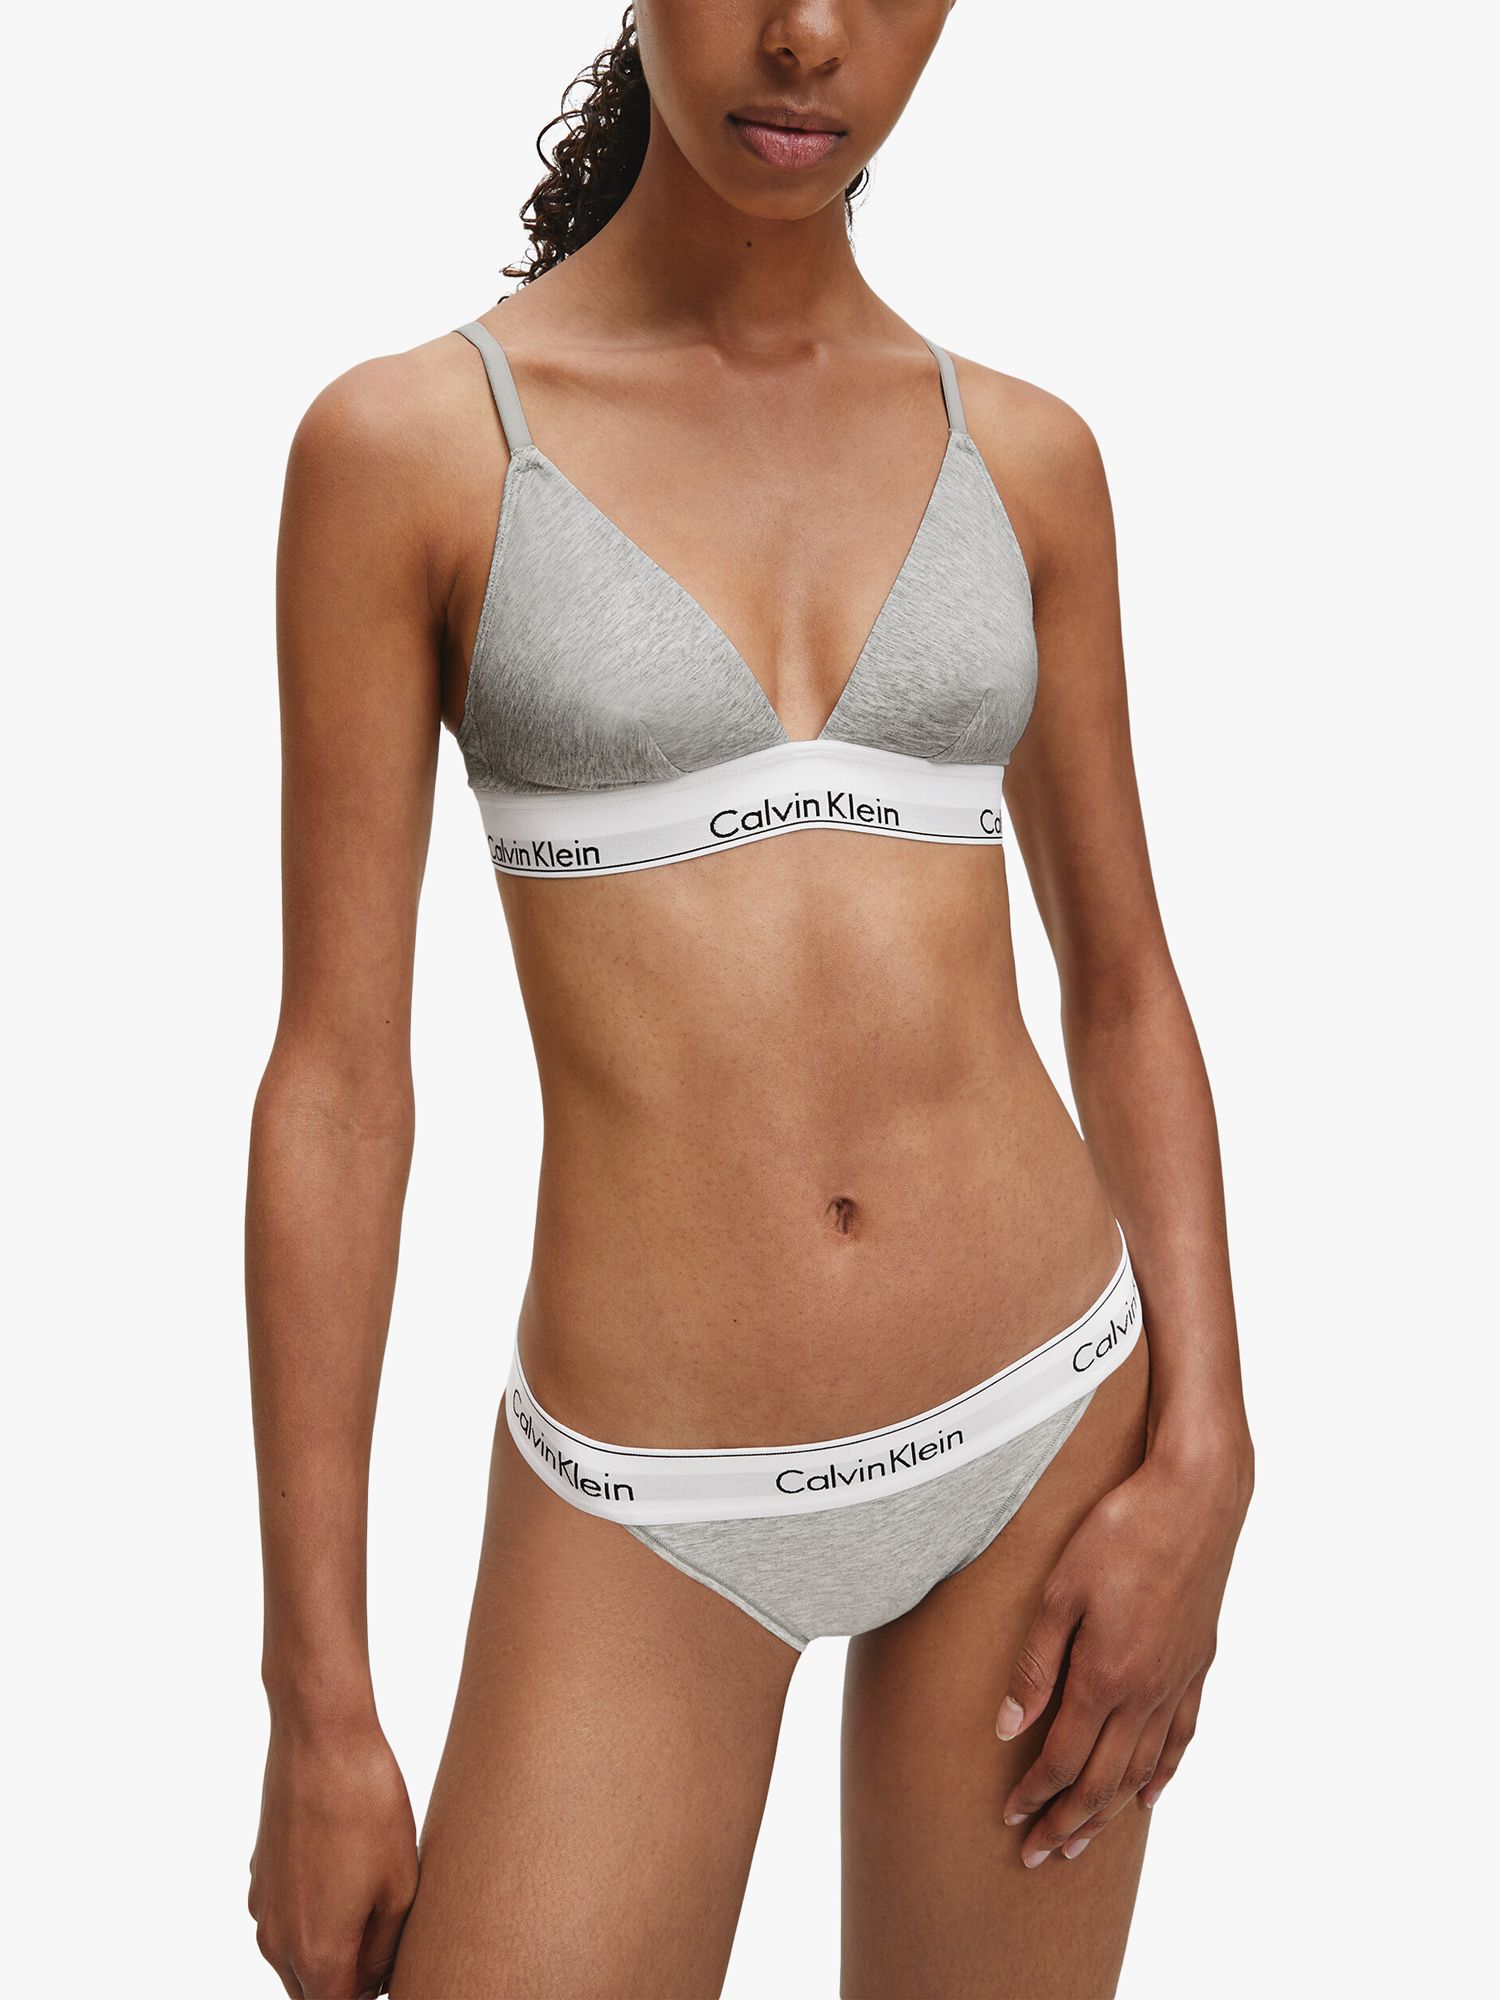 Calvin Klein Women's Carousel Logo Bralette 2-Pack, Grey Heater